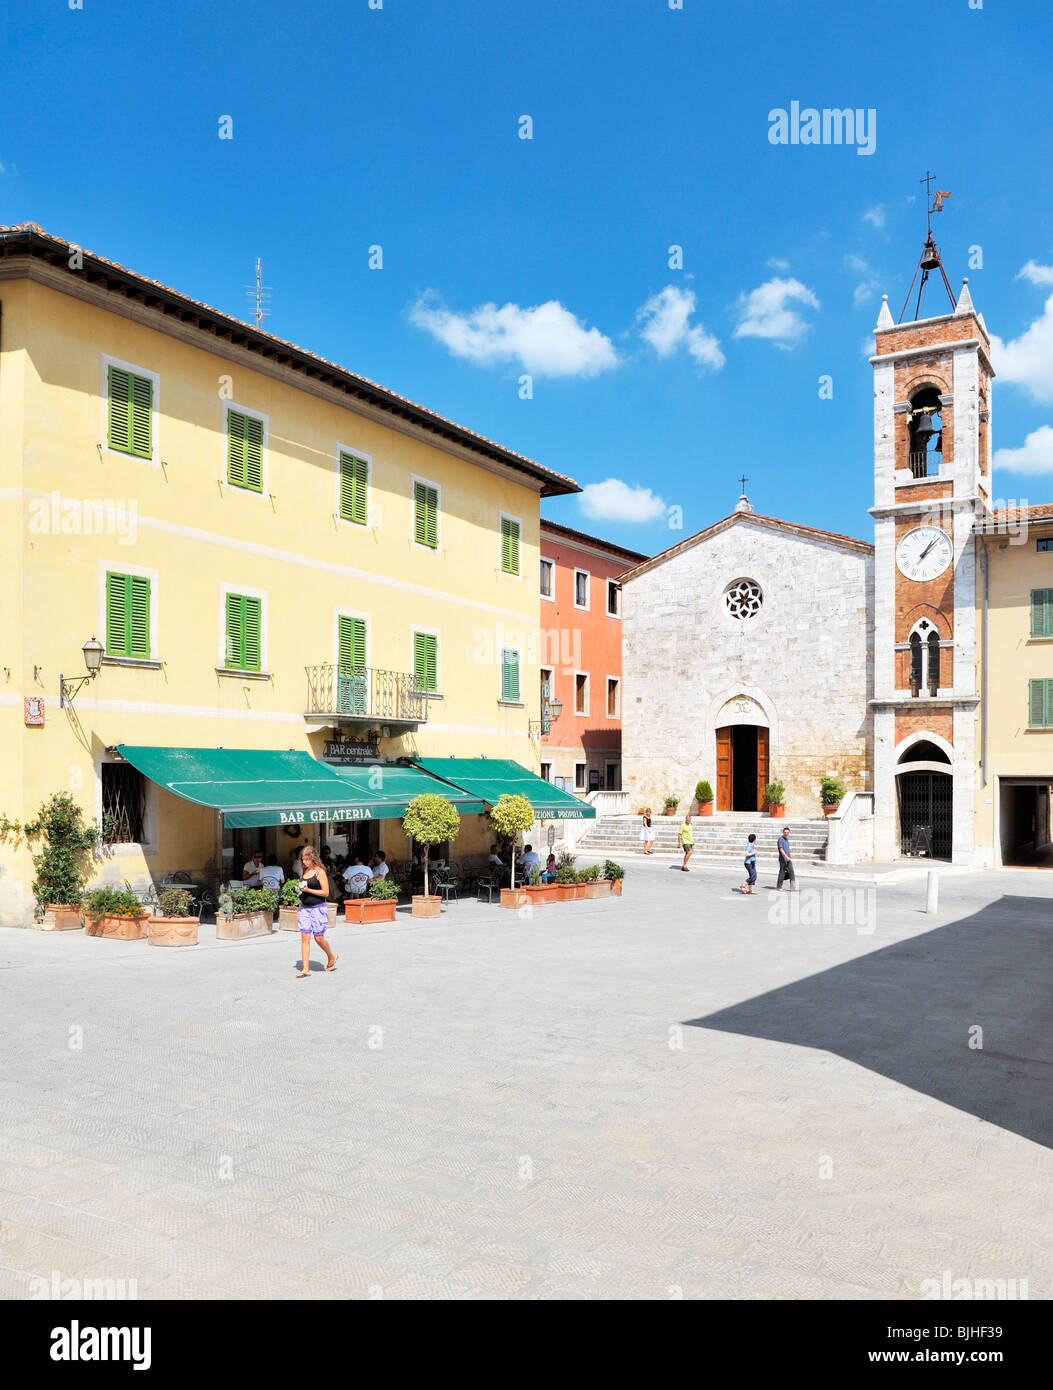 La Piazza della Liberta dans le centre du village perché de San Quirico d'Orcia, Toscane, Italie Banque D'Images